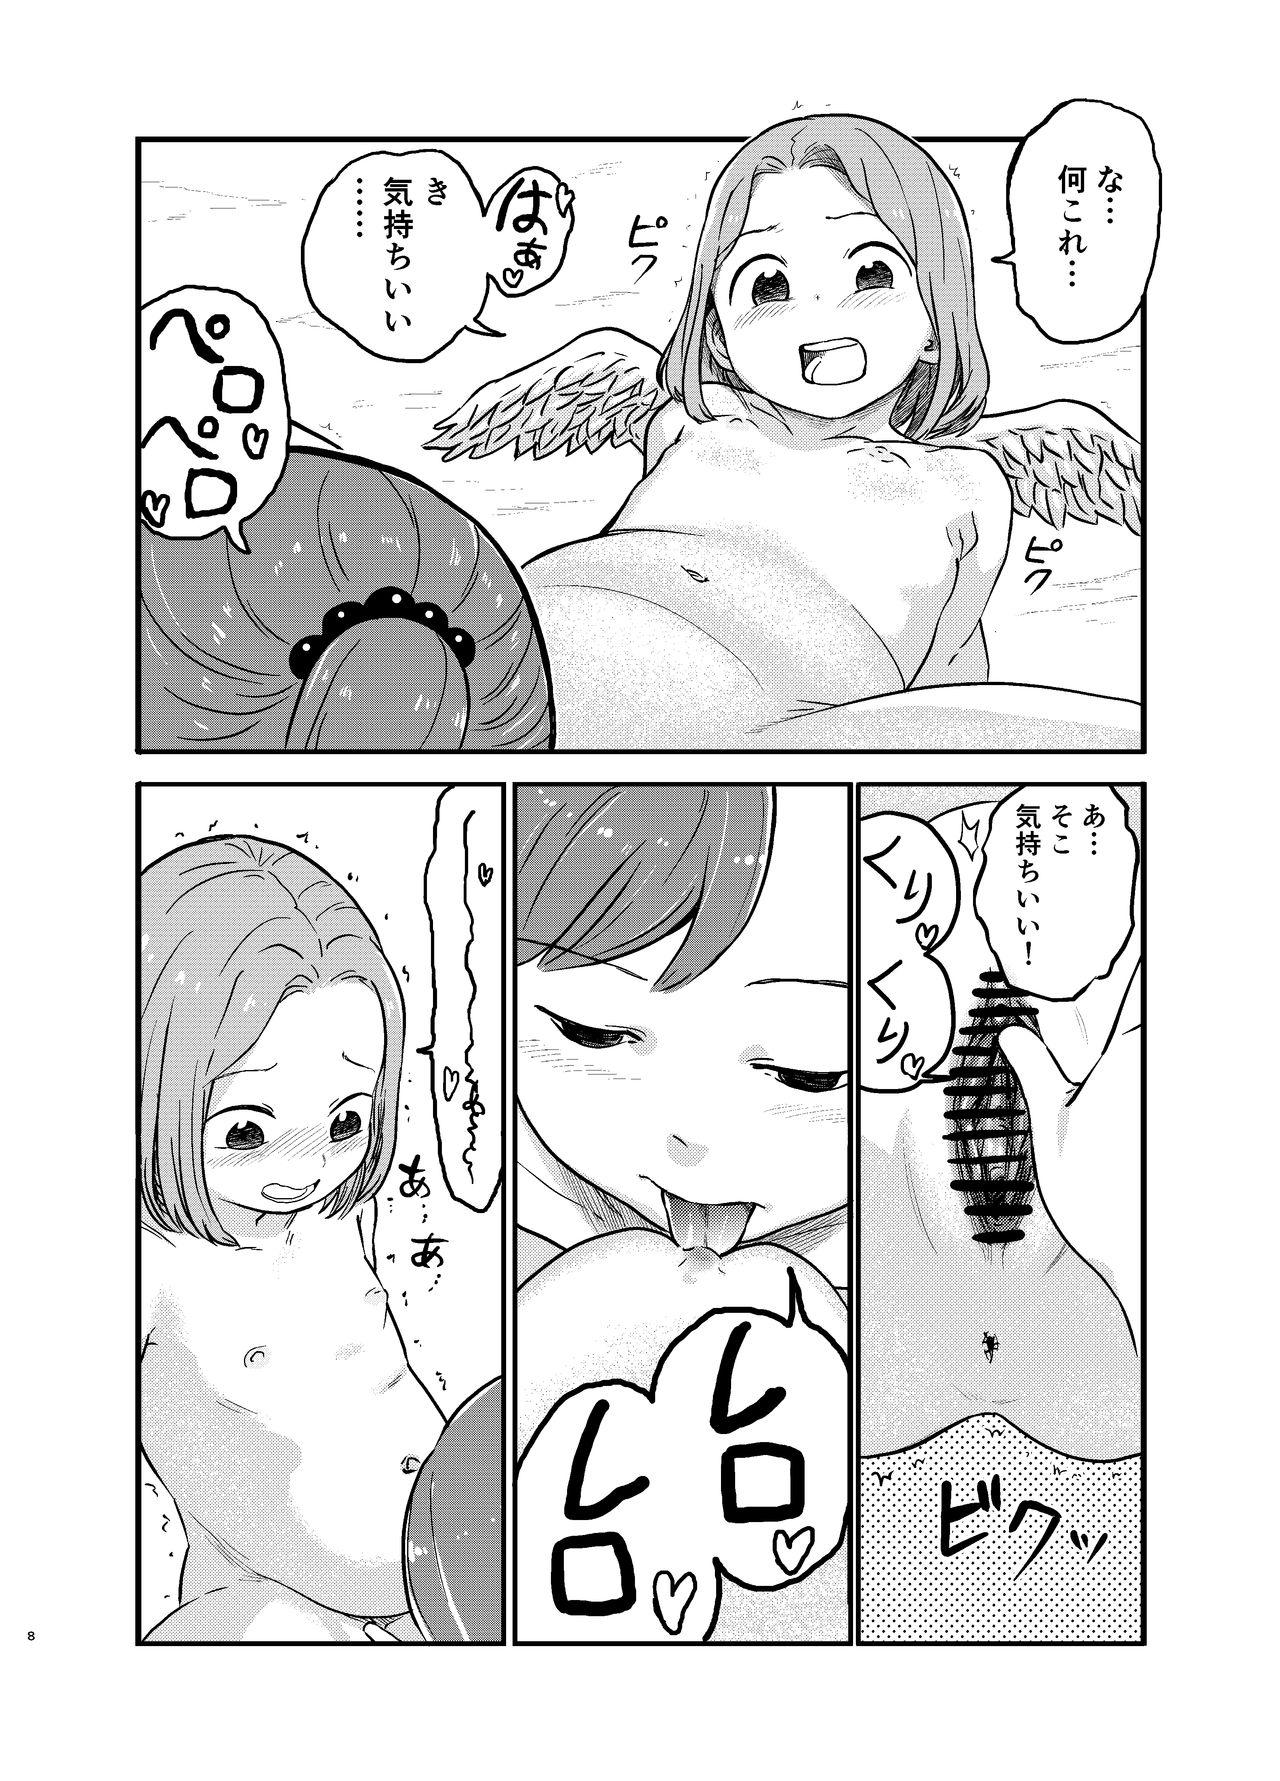 Cumshot Yuri Tenshi no Futari ga Ecchi na Koto o Suru Manga - Original American - Page 8